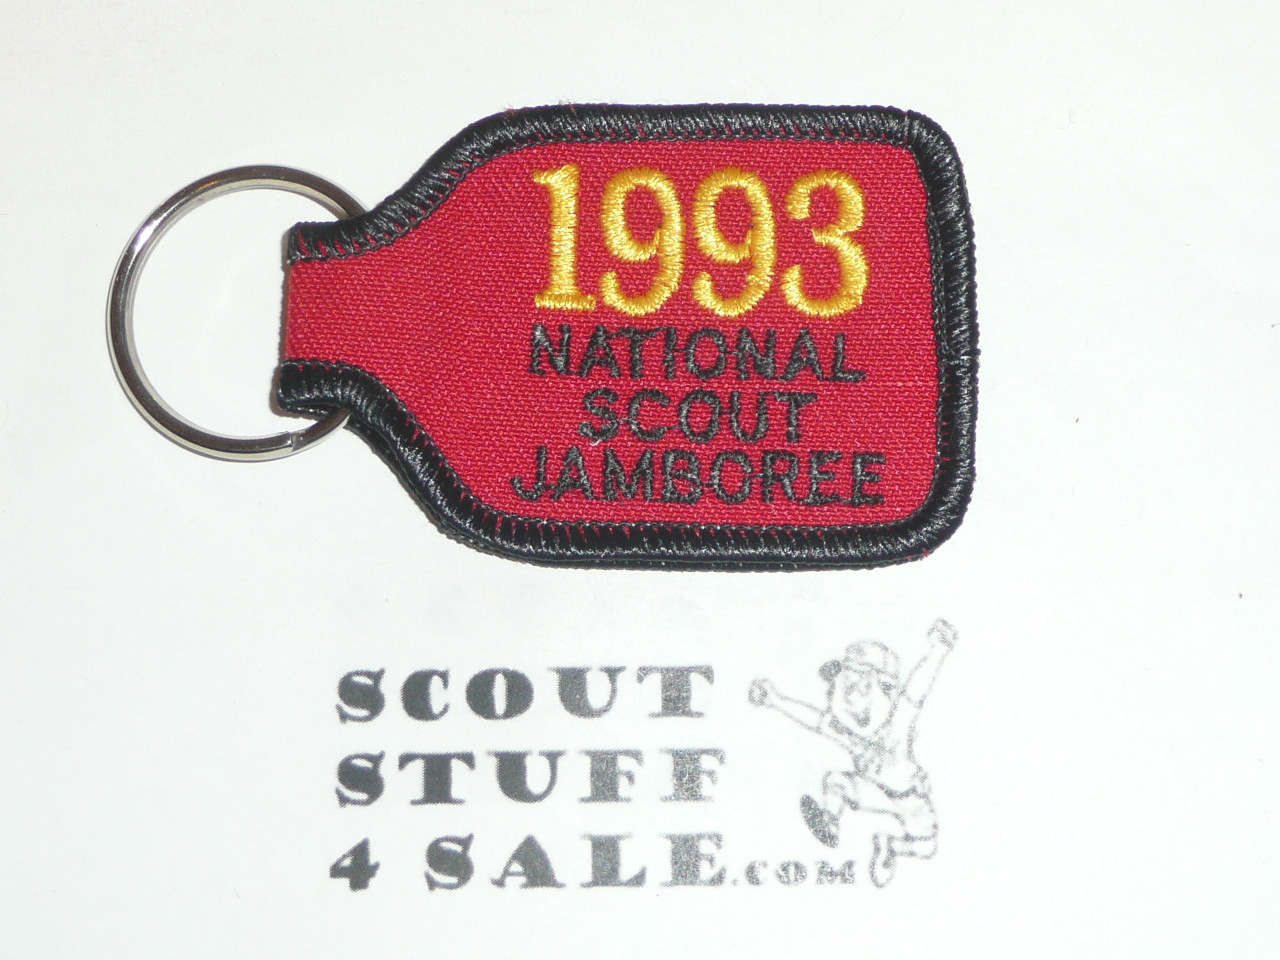 1993 National Jamboree Key Chain, fabric